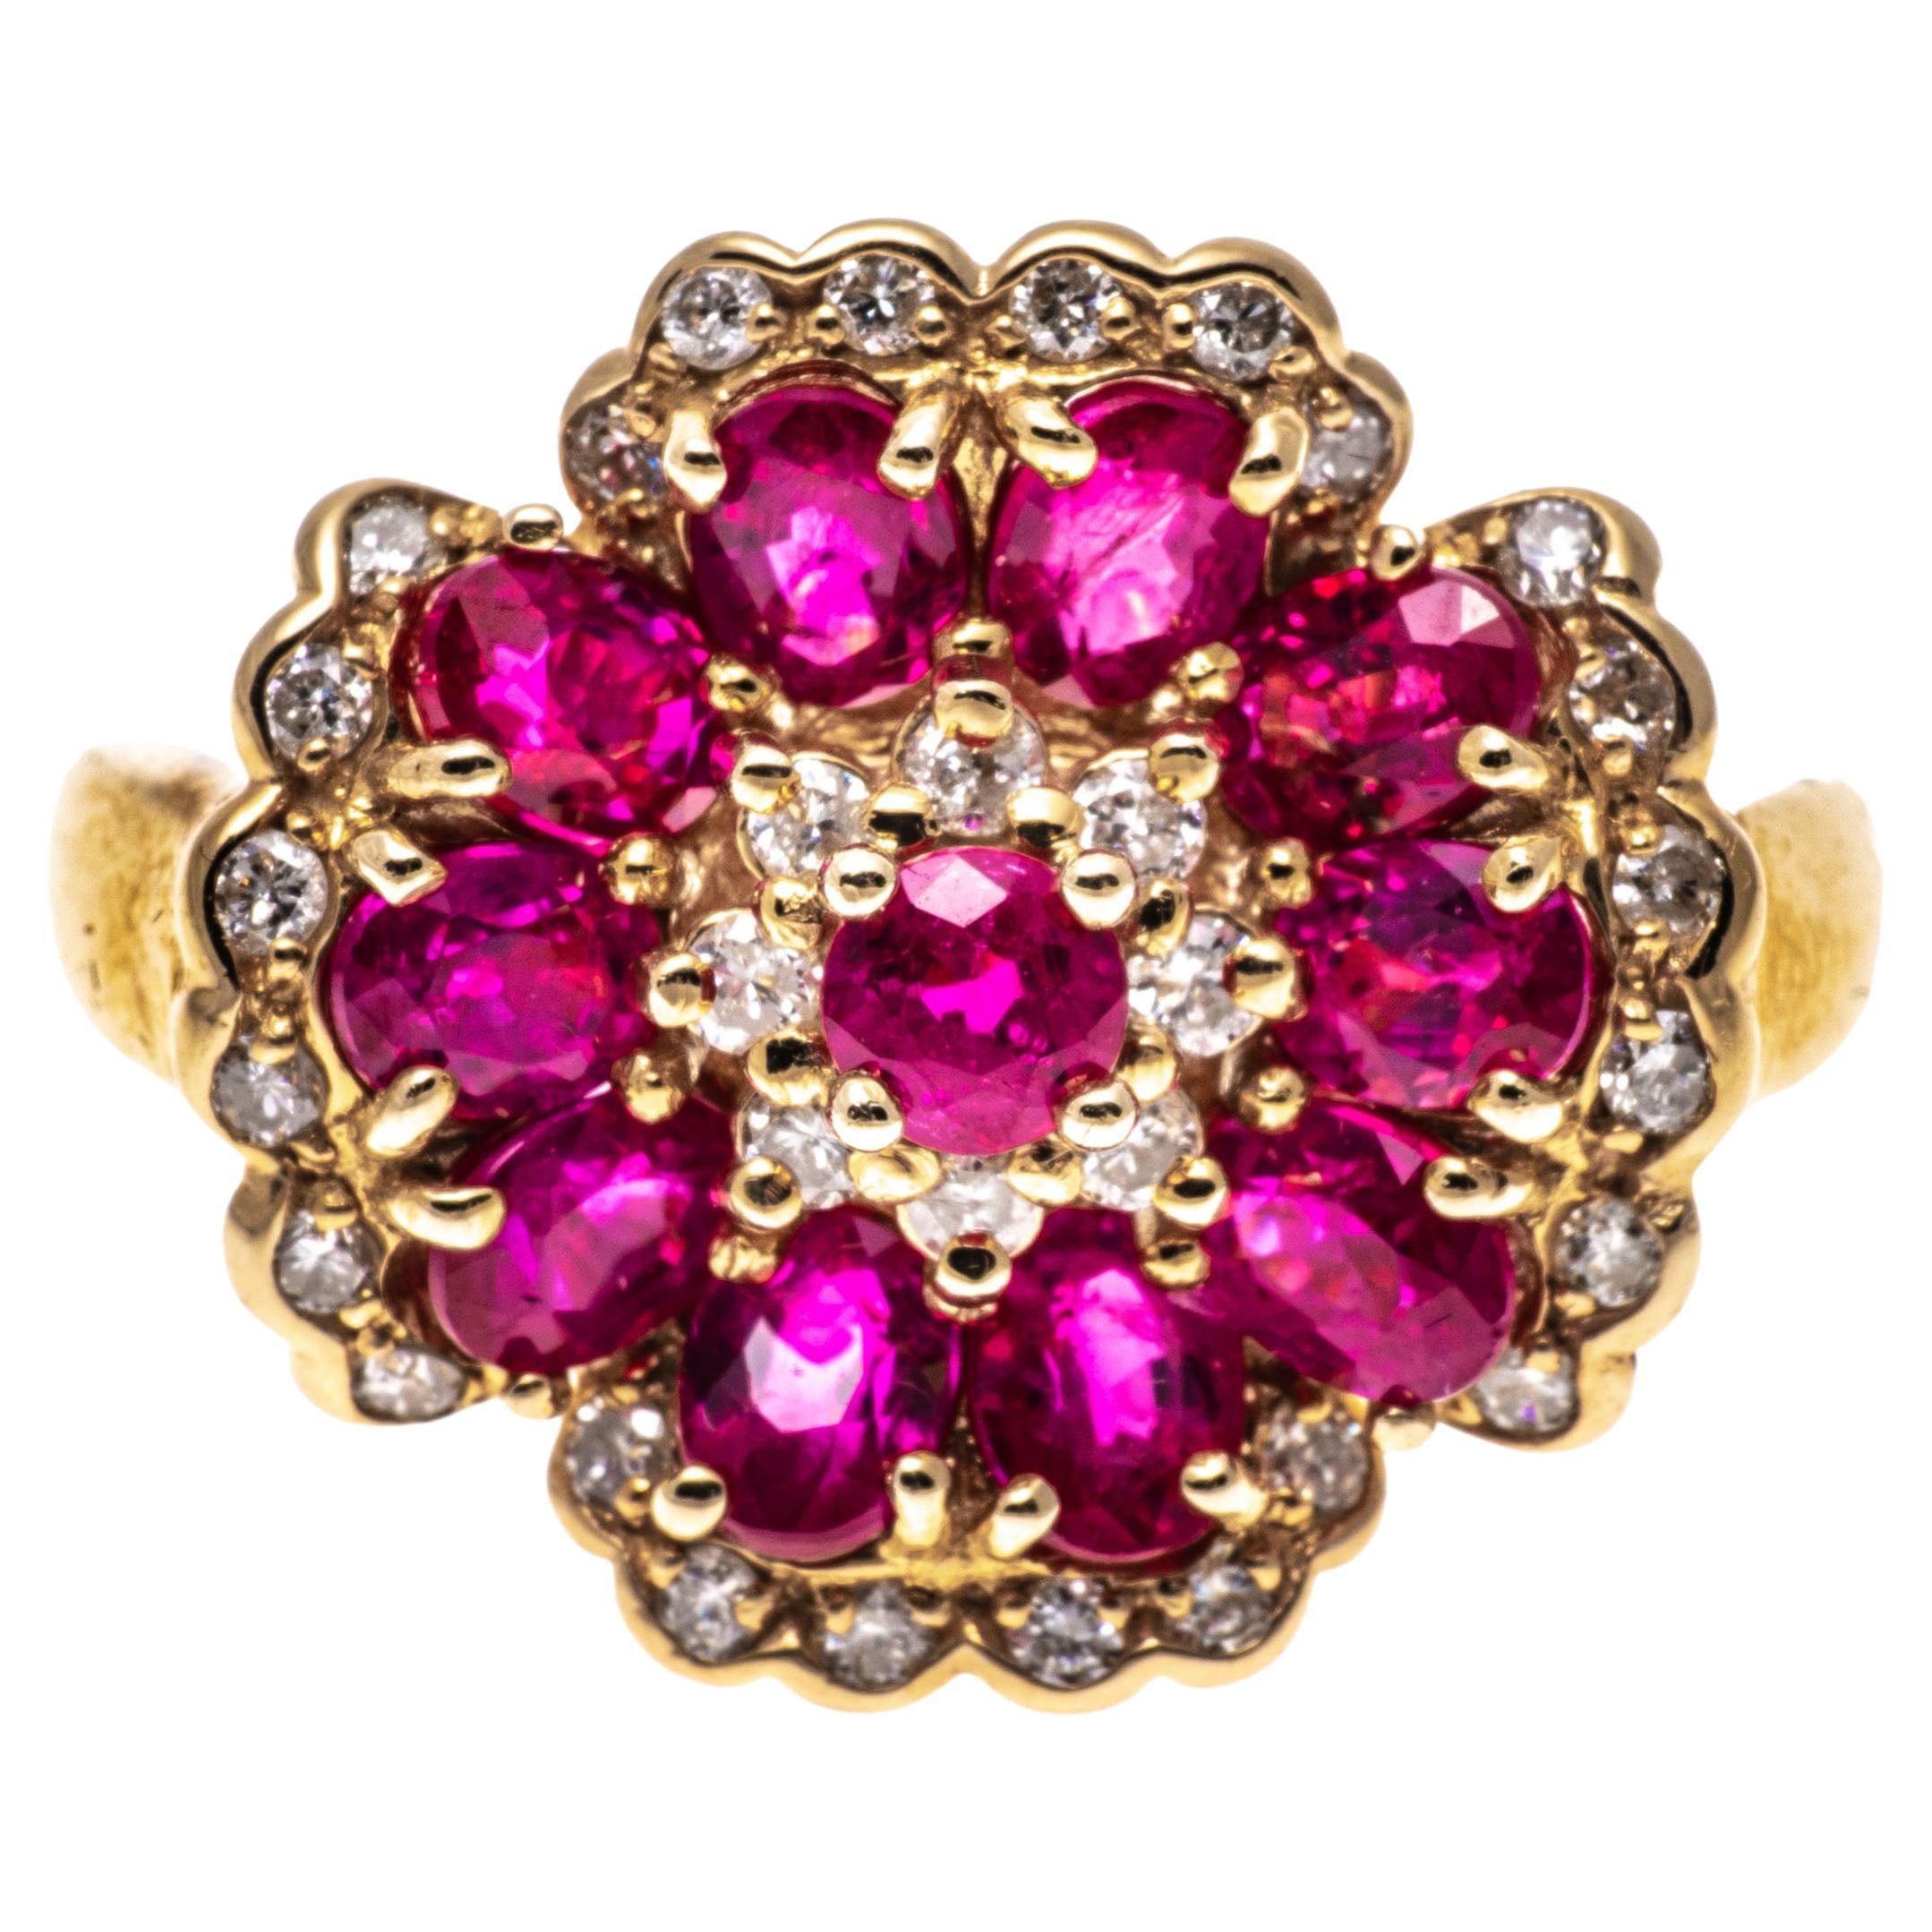 14k Gelbgold Ring mit ovalem Rubin-Blumenmotiv und Diamantbesatz